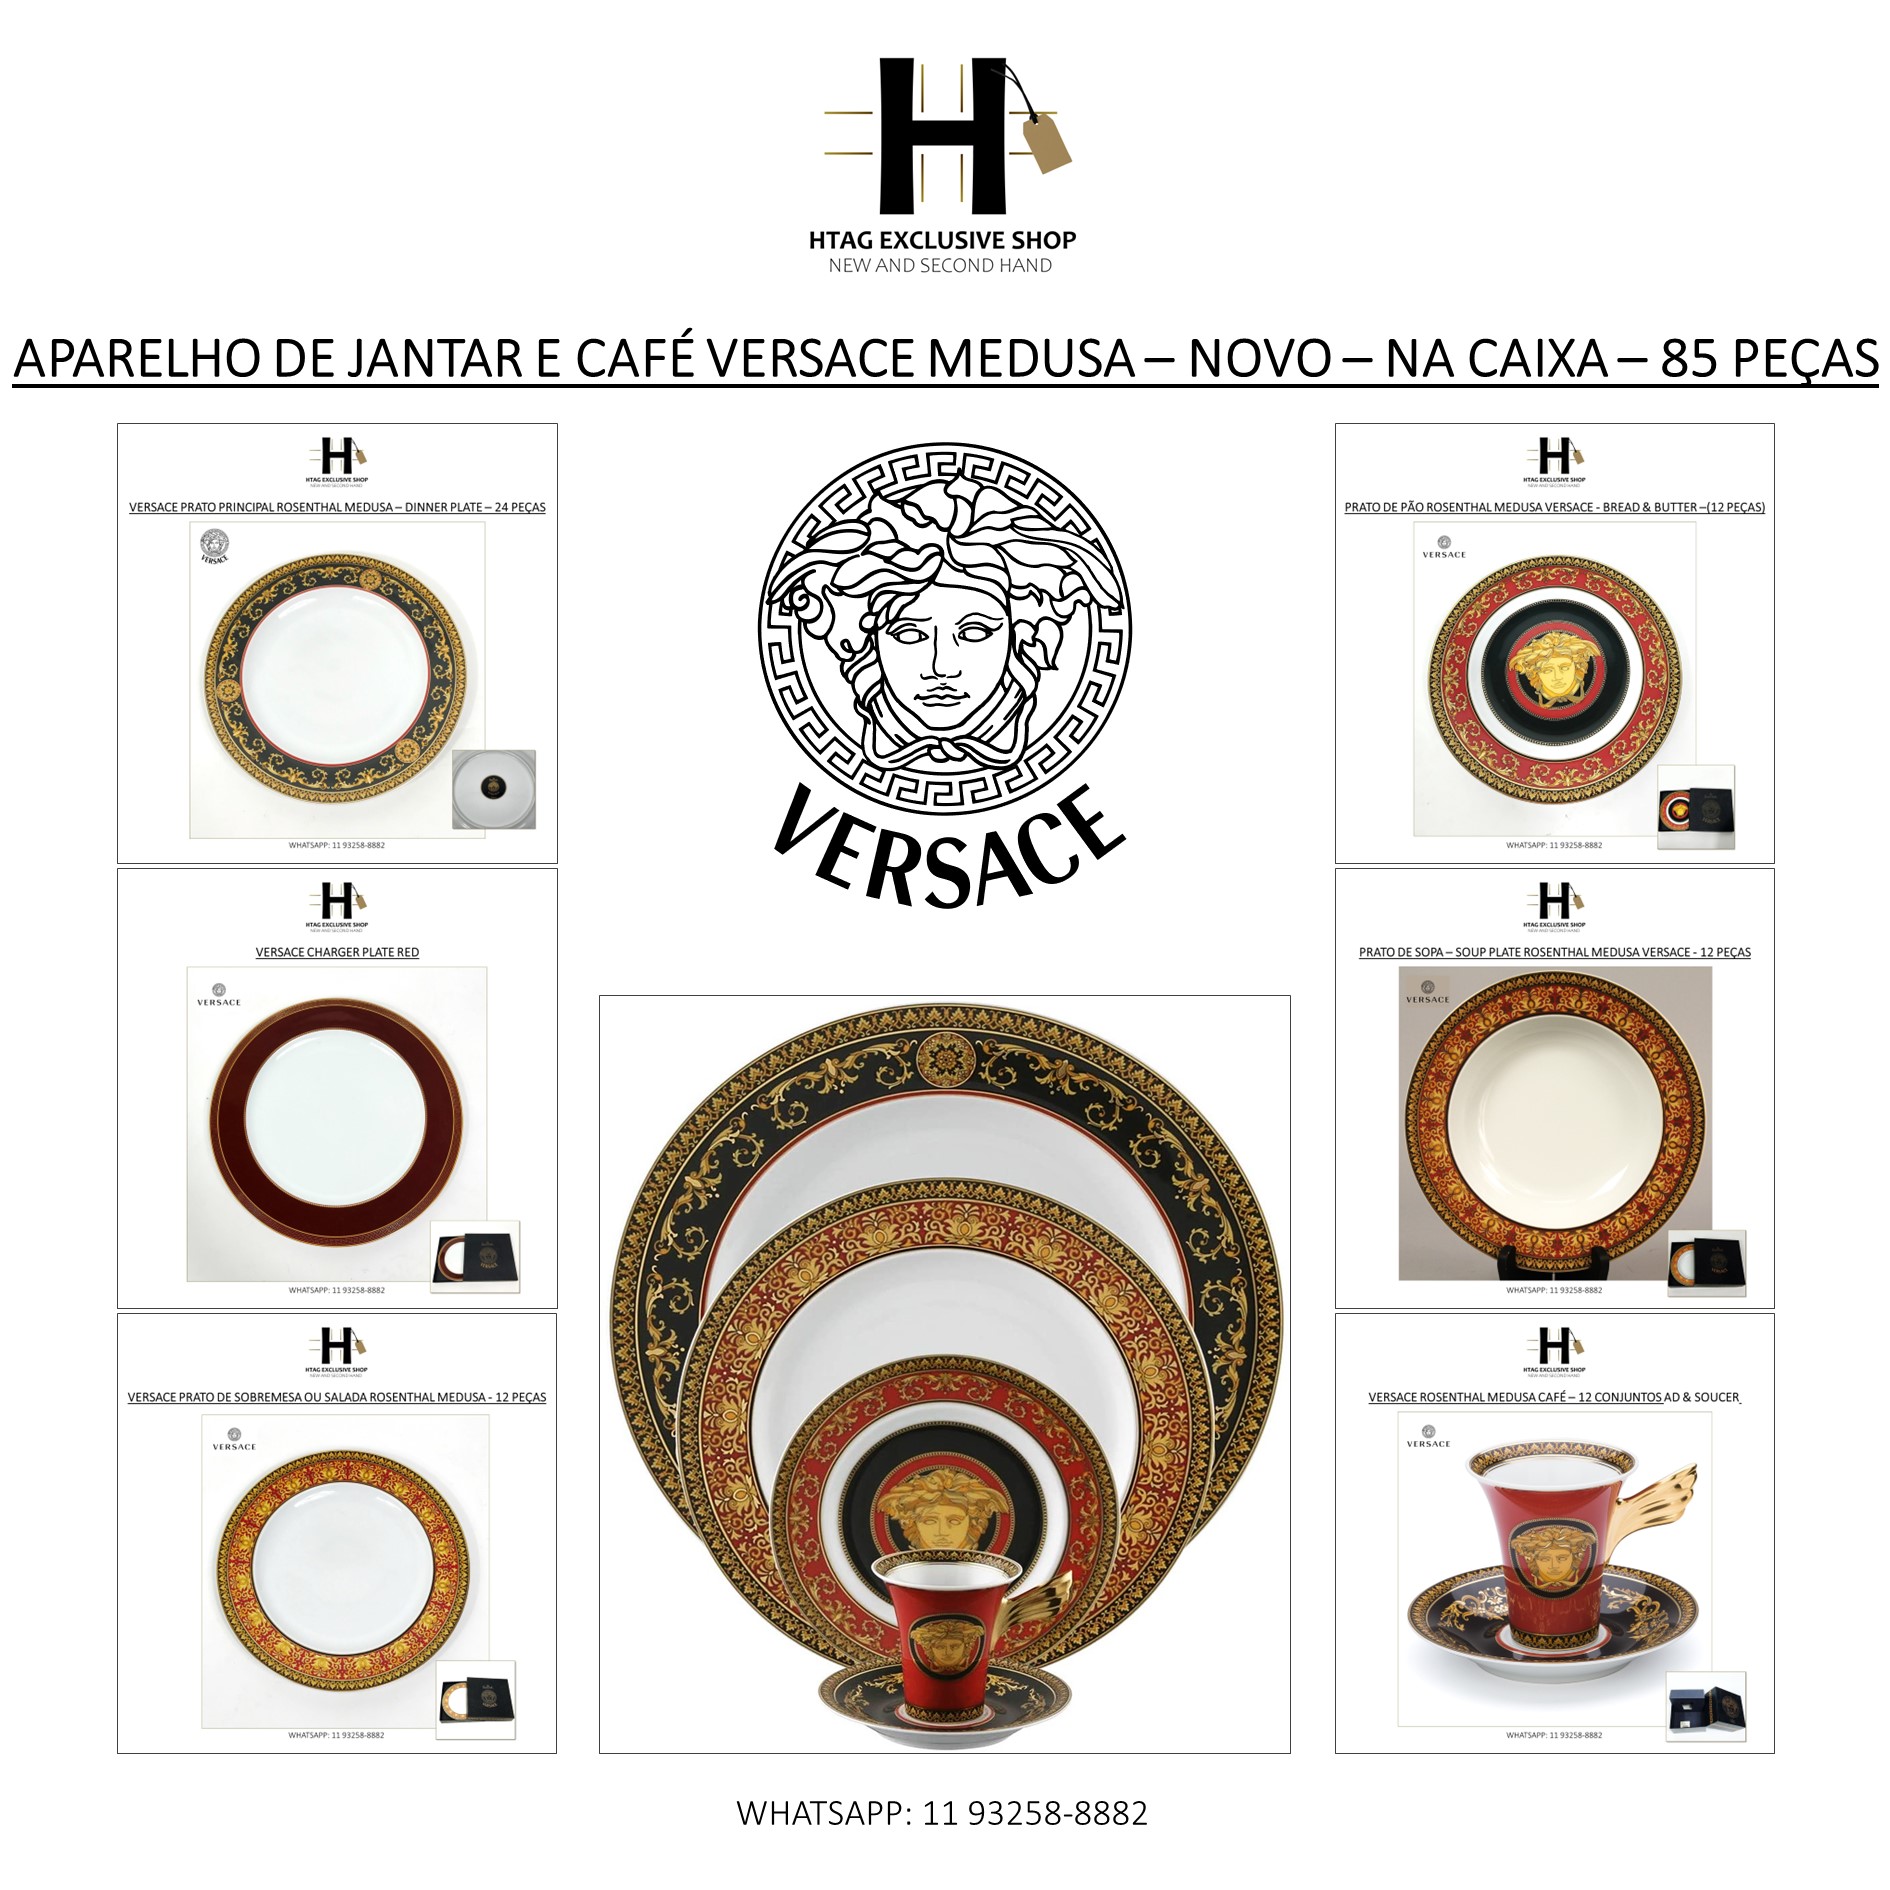 APARELHO DE JANTAR E CAFÉ VERSACE ROSENTHAL MEDUSA – NA CAIXA - 84 PÇ -  HTAG EXCLUSIVE SHOP - New & Second Hand